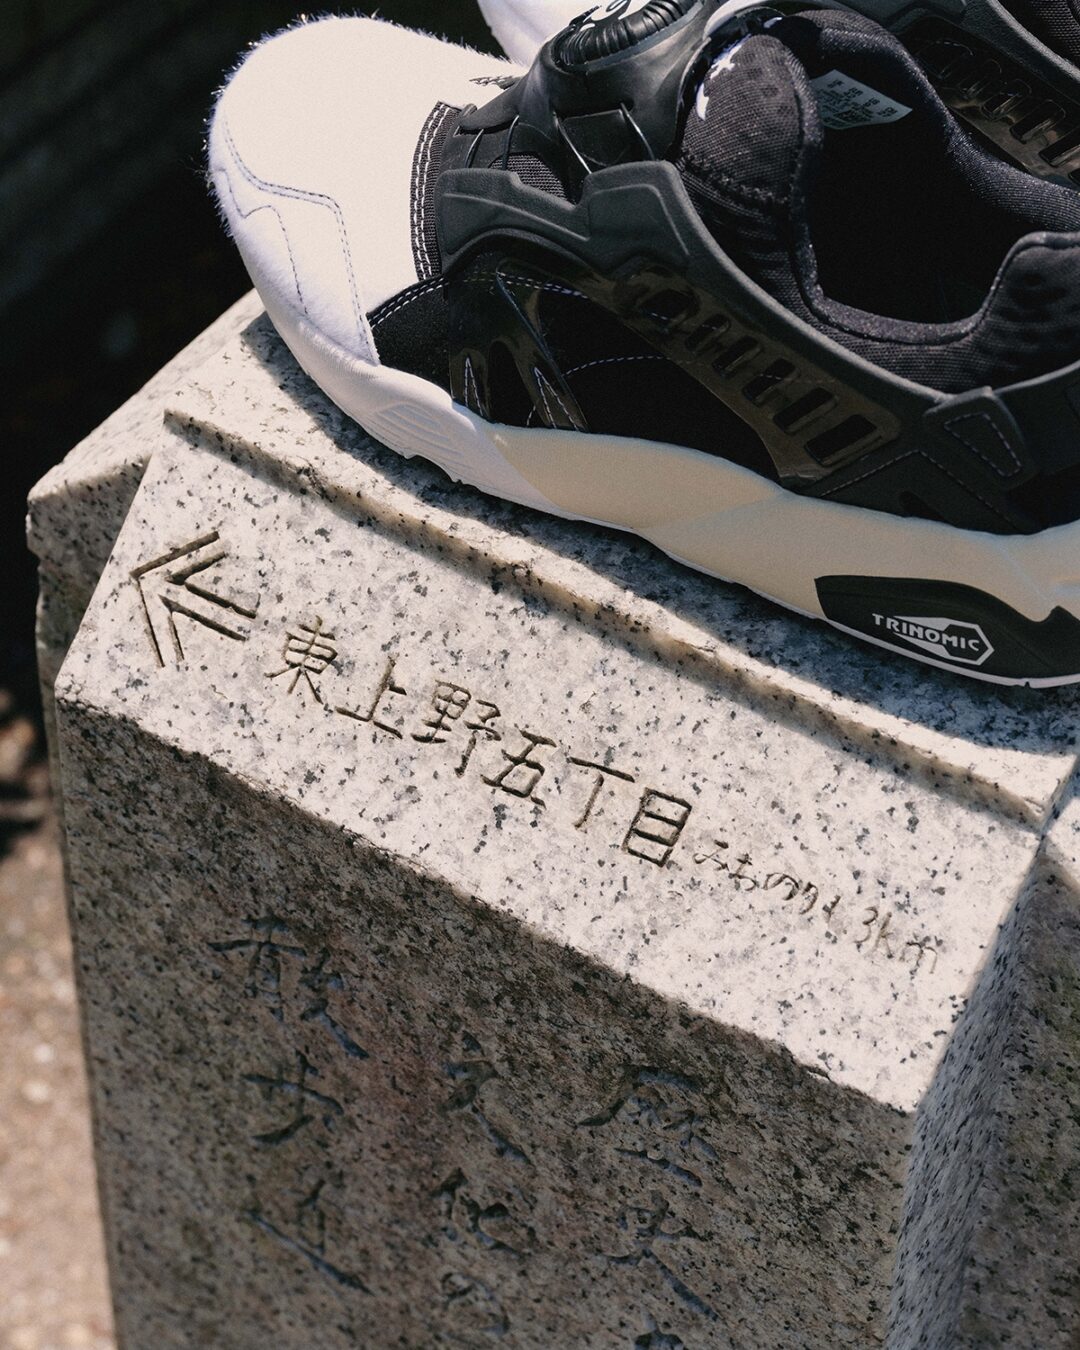 【国内 5/27 発売】mita sneakers × PUMA DISC BLAZE OG MS ”UENO PANDA” (ミタスニーカーズ プーマ ディスク ブレイズ “ウエノパンダ/上野”)